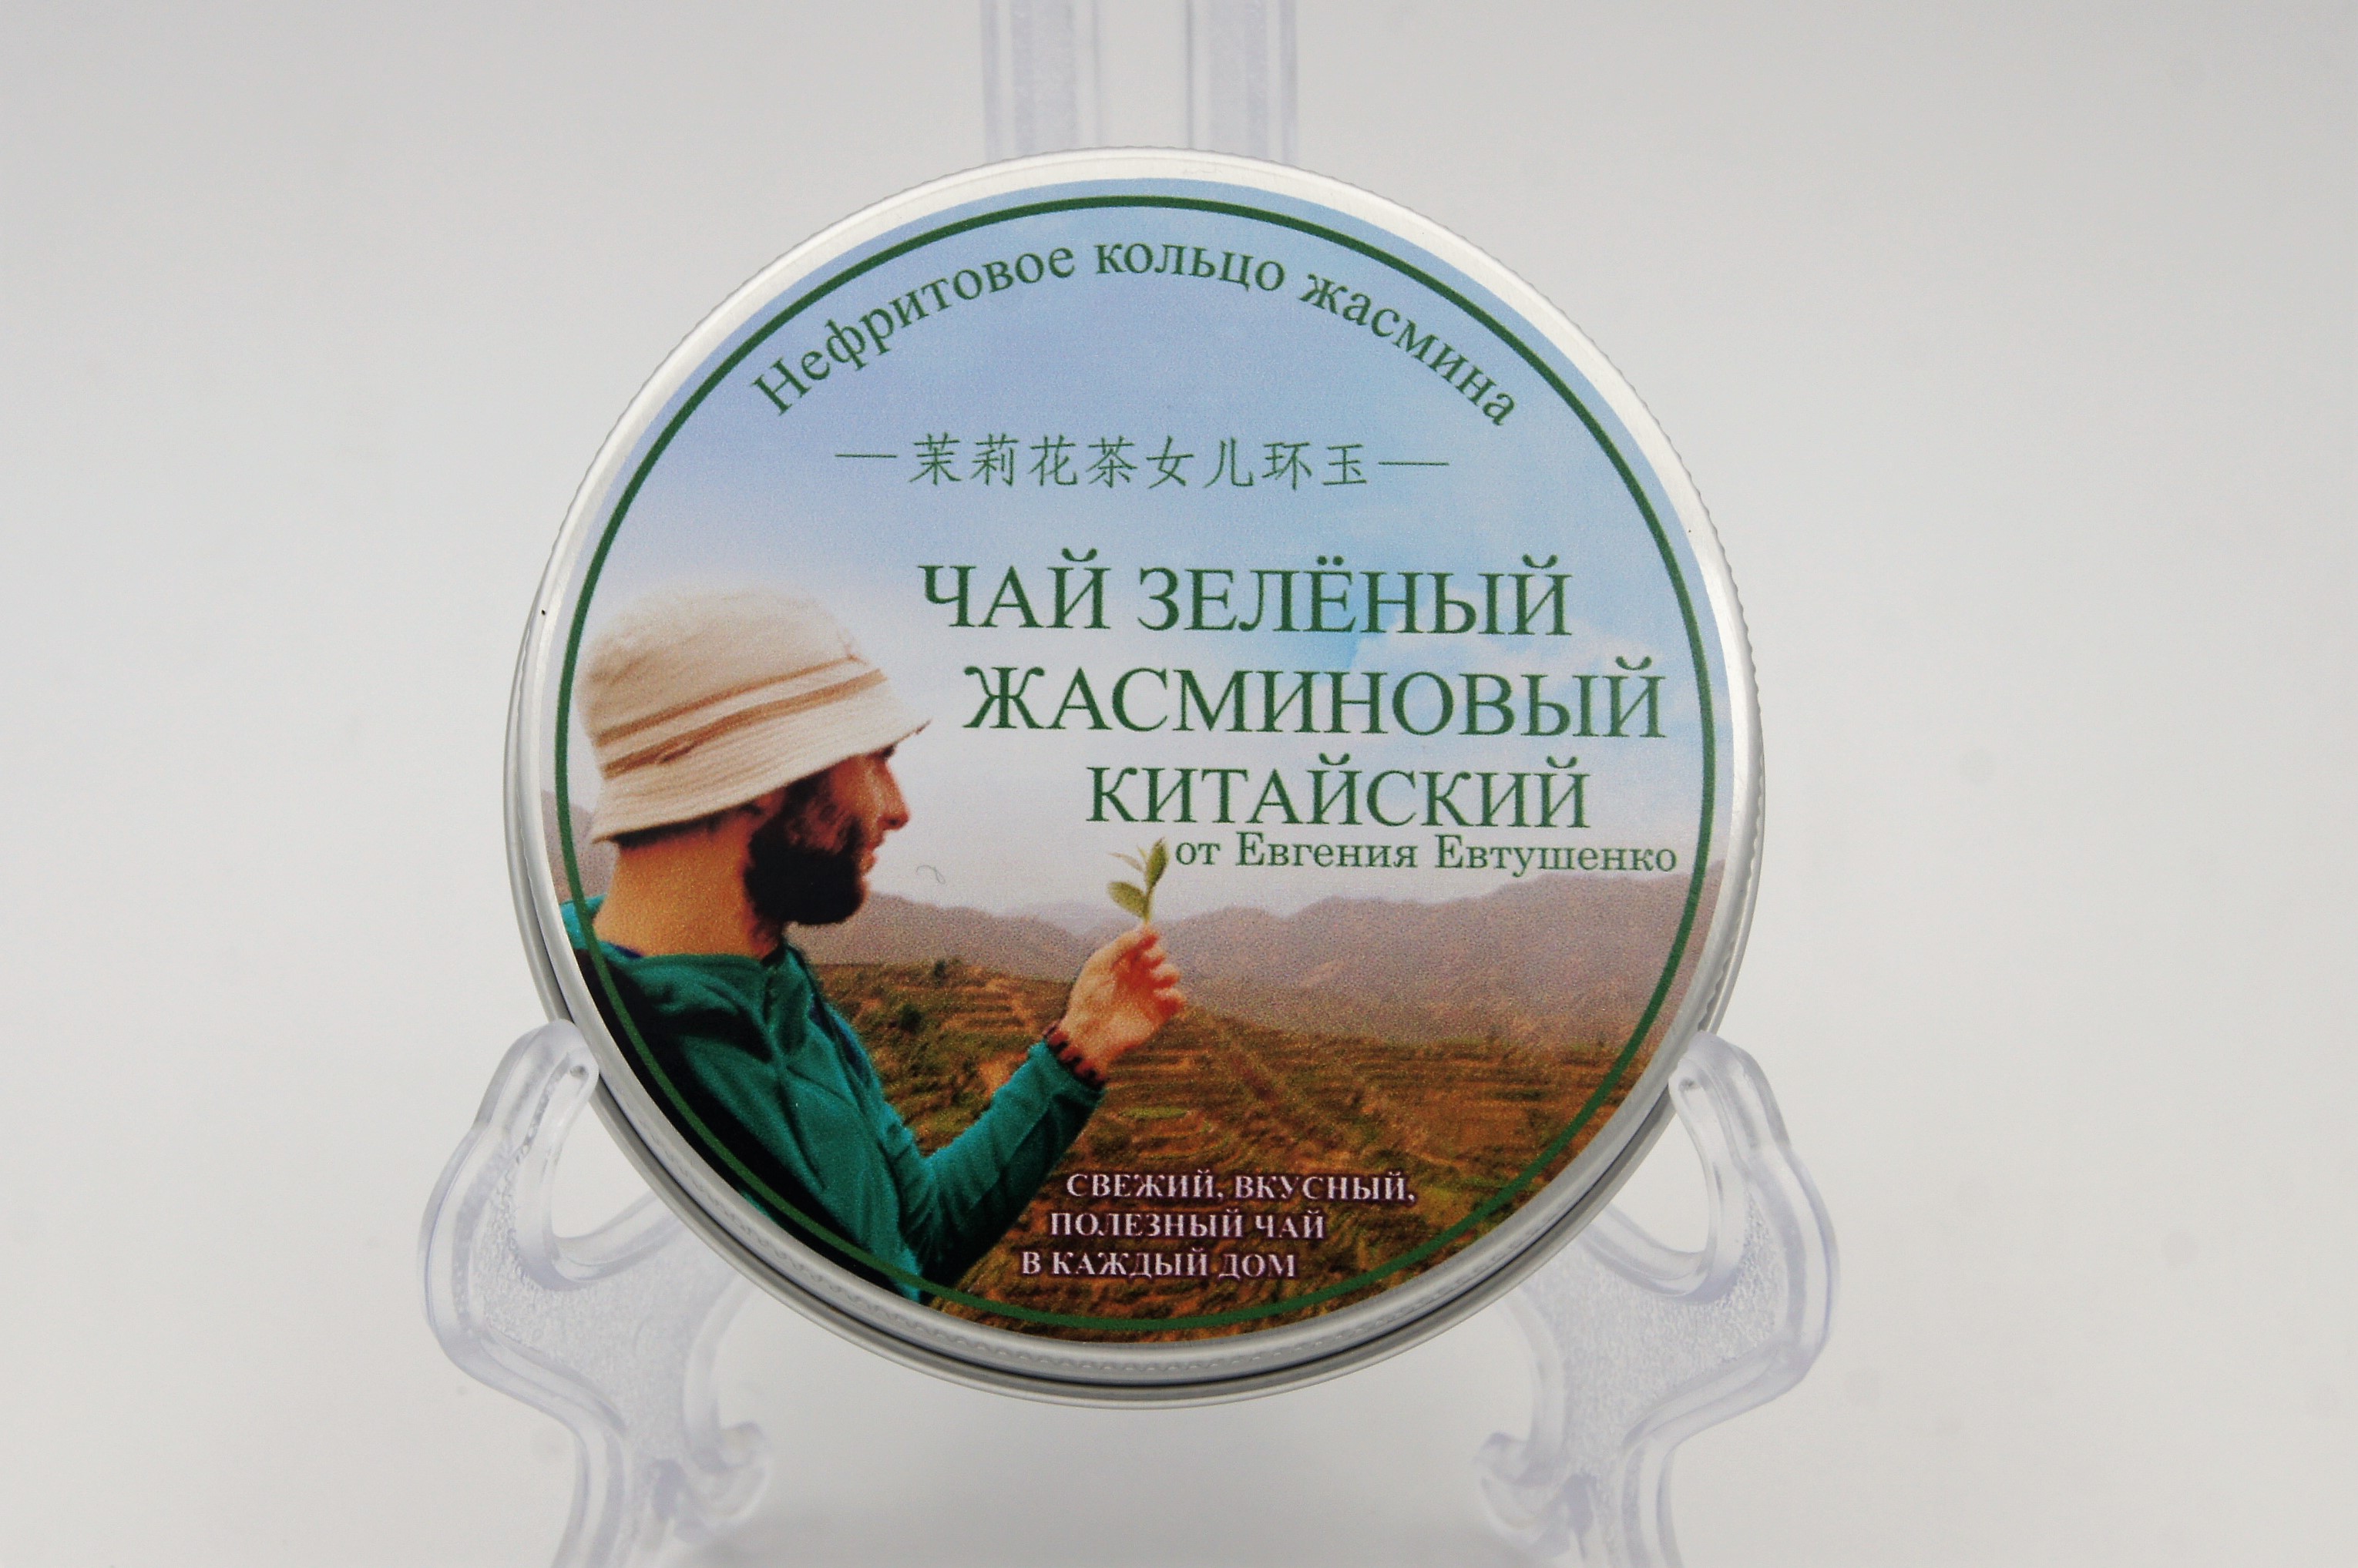 Чай зеленый от Евгения Евтушенко Нефритовое кольцо жасмина, Китай, банка 50 г